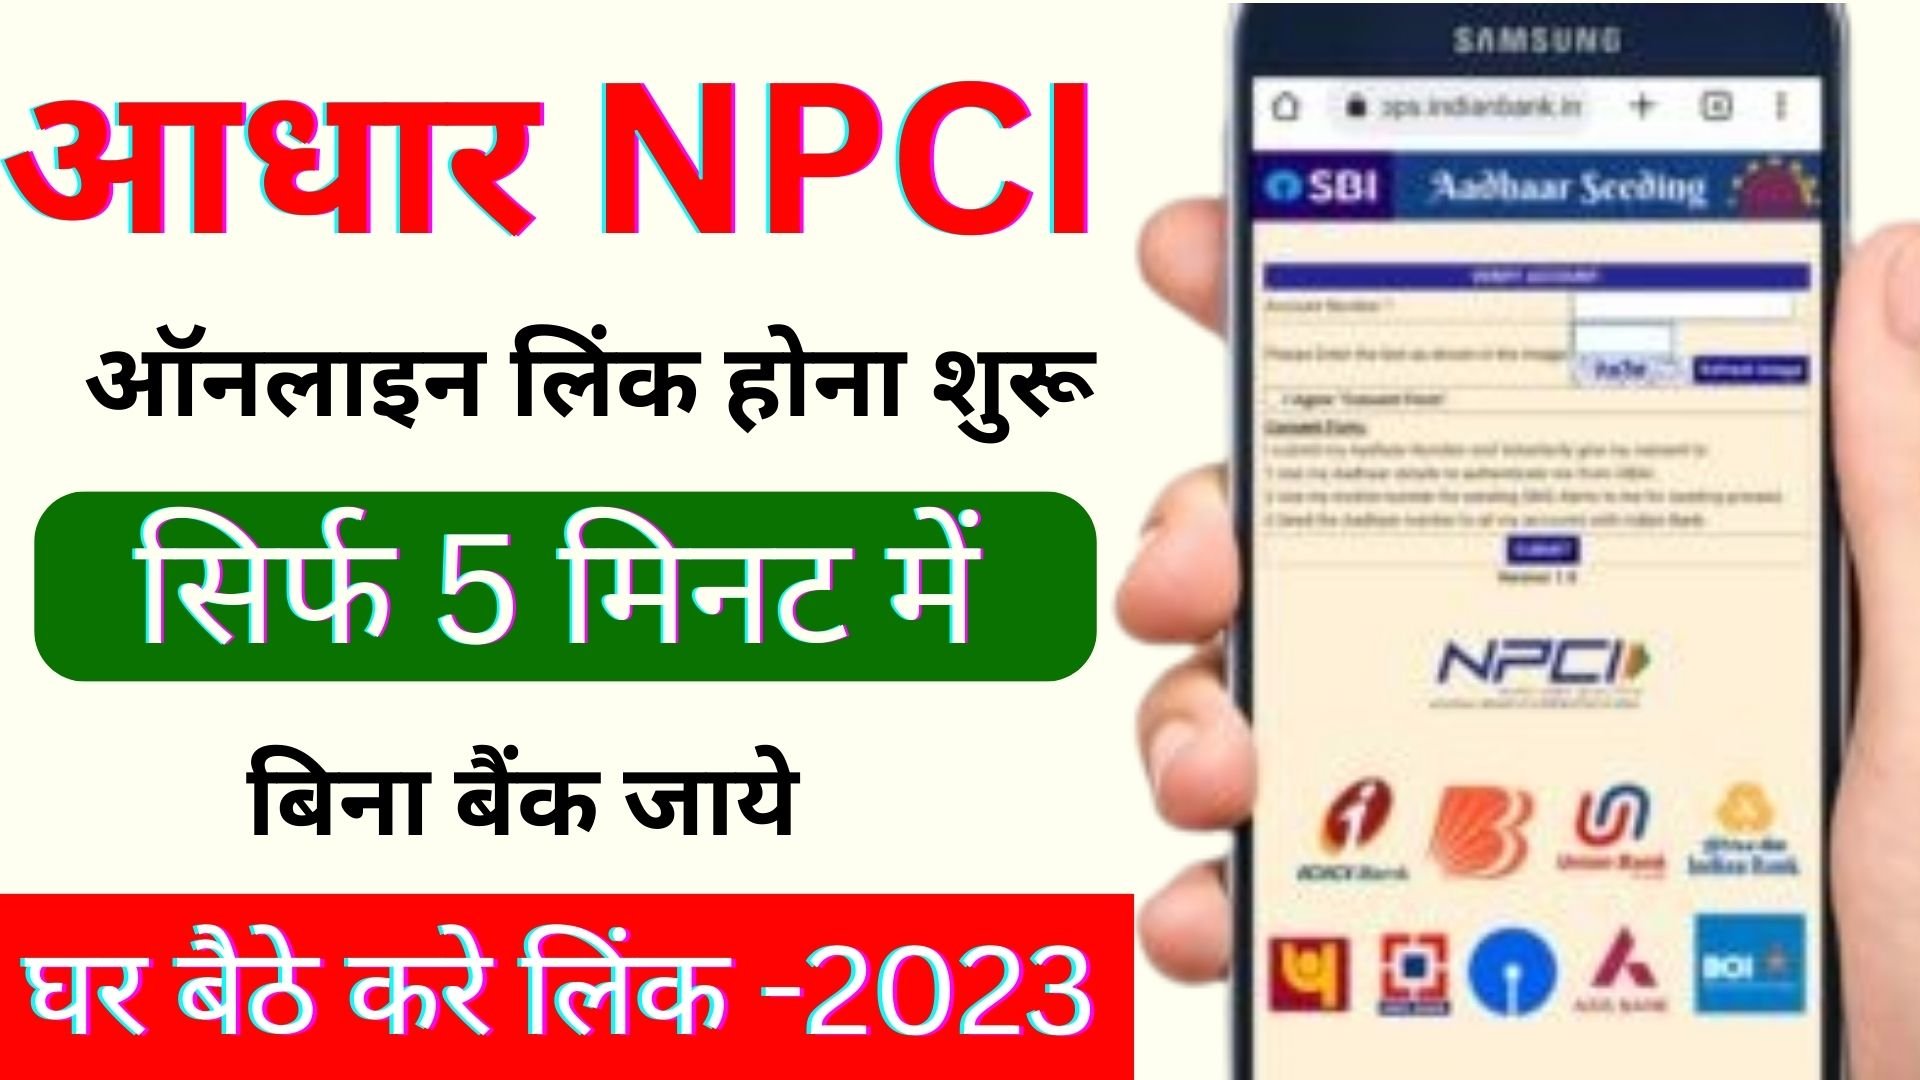 Aadhaar NPCI Online Link complete Process 2023 : बैंक खाते में ऑनलाइन आधार NPCI लिंक होना शुरू